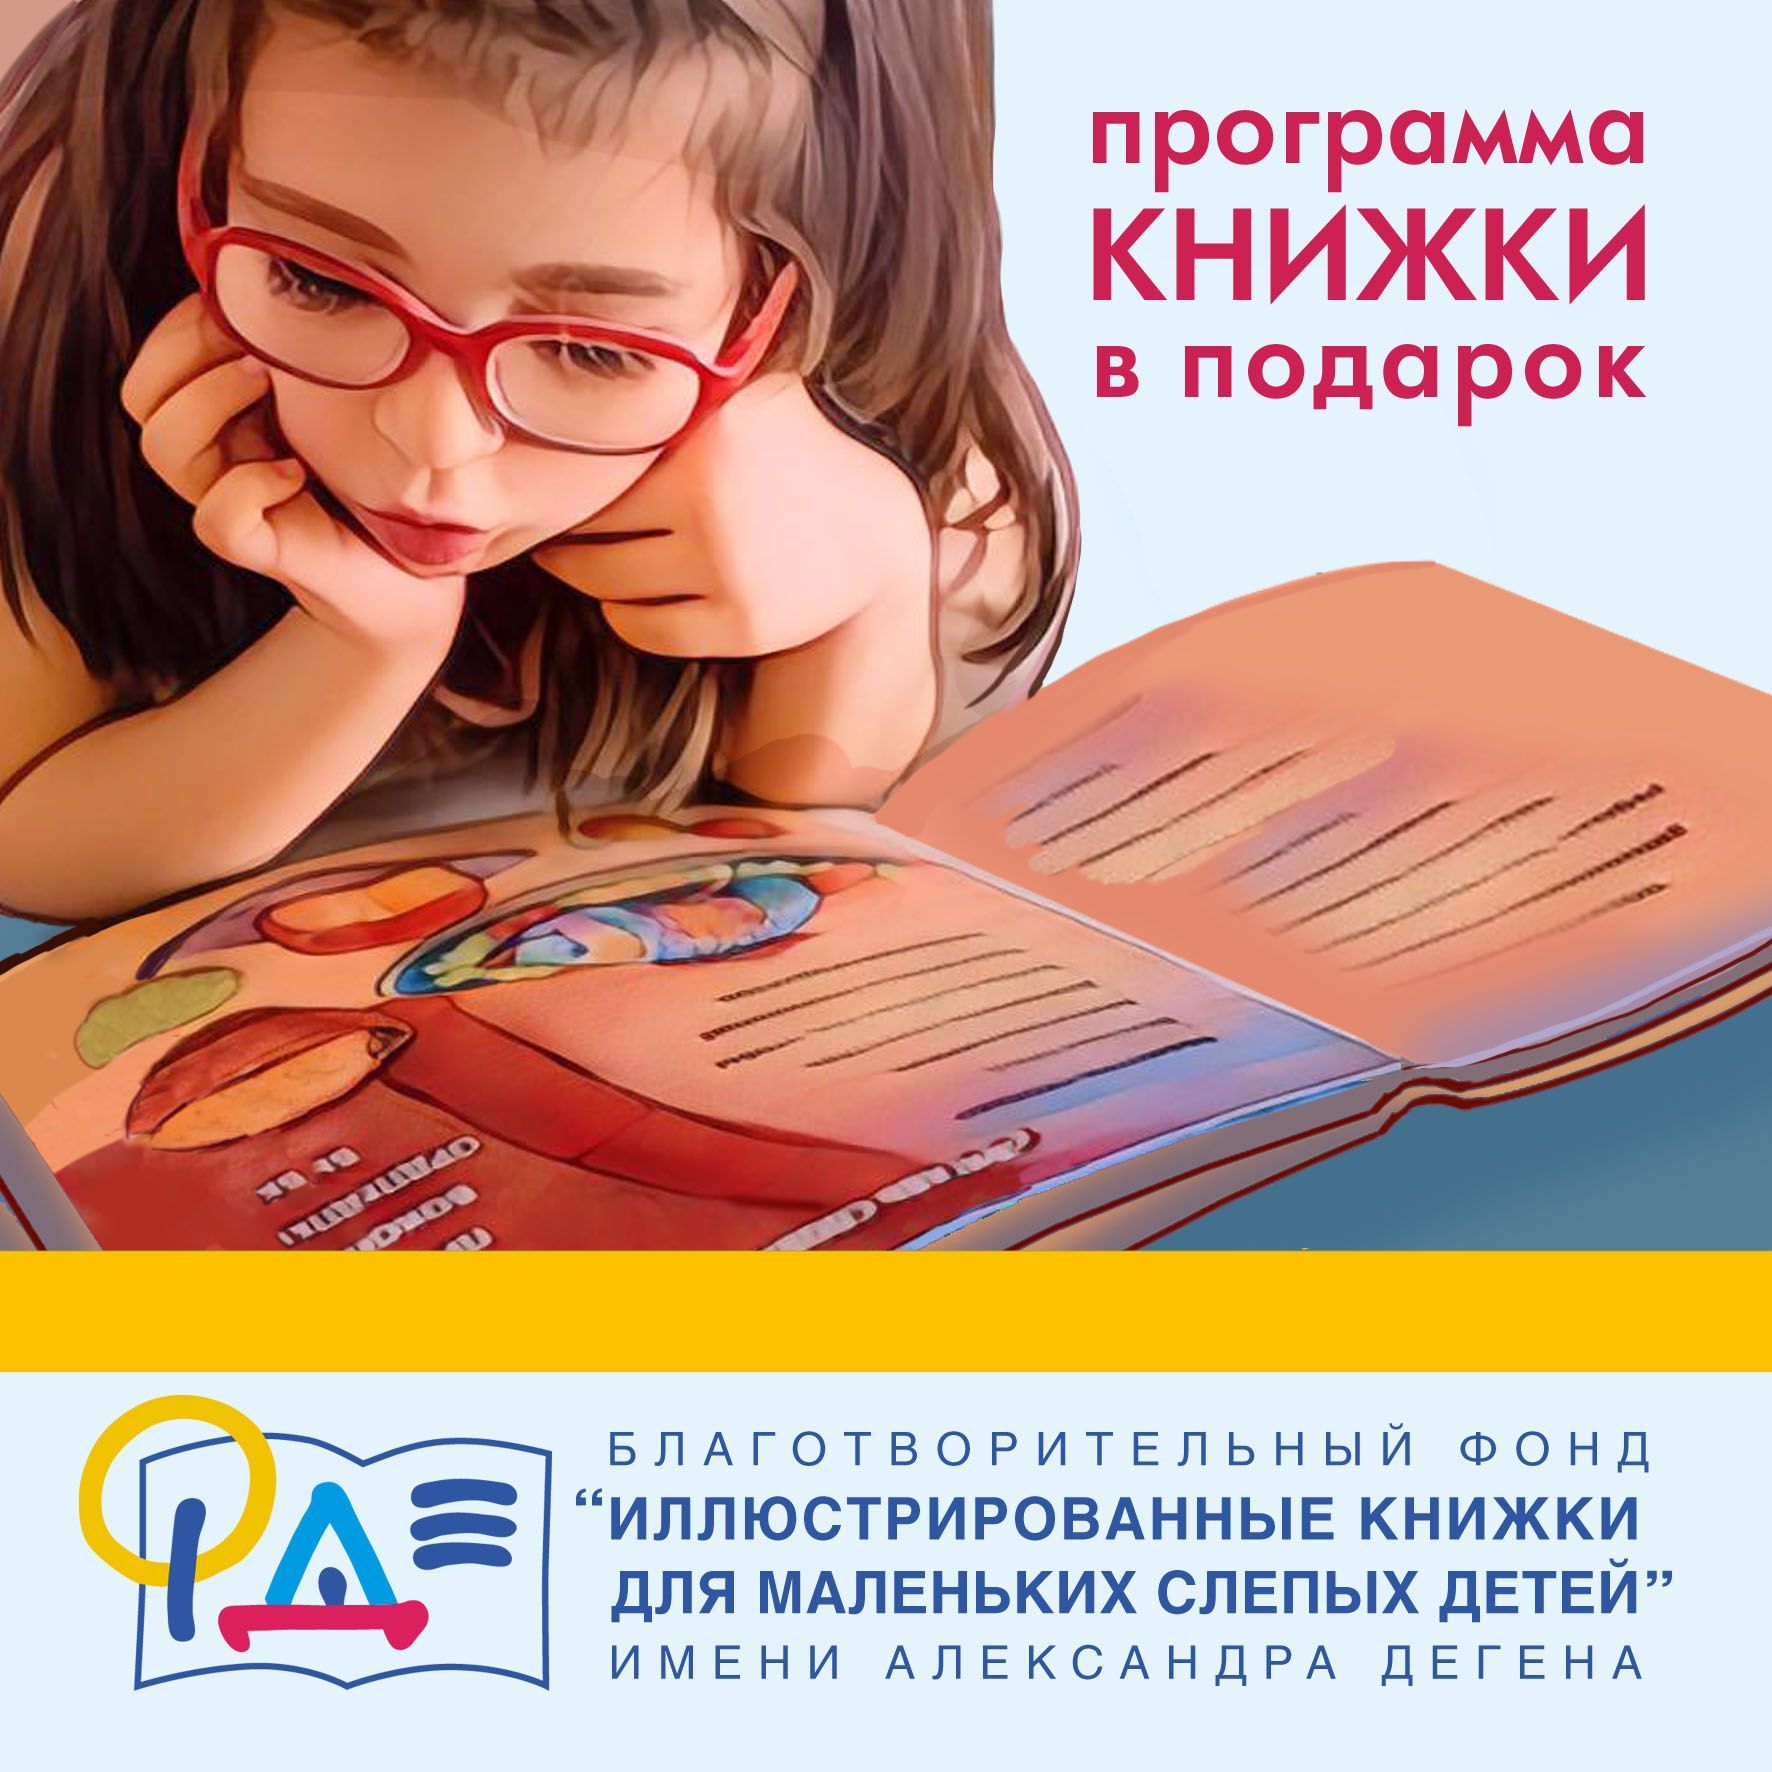 Из войлока и пряжи: в Челябинске выпустят мягкие книги для слепых детей